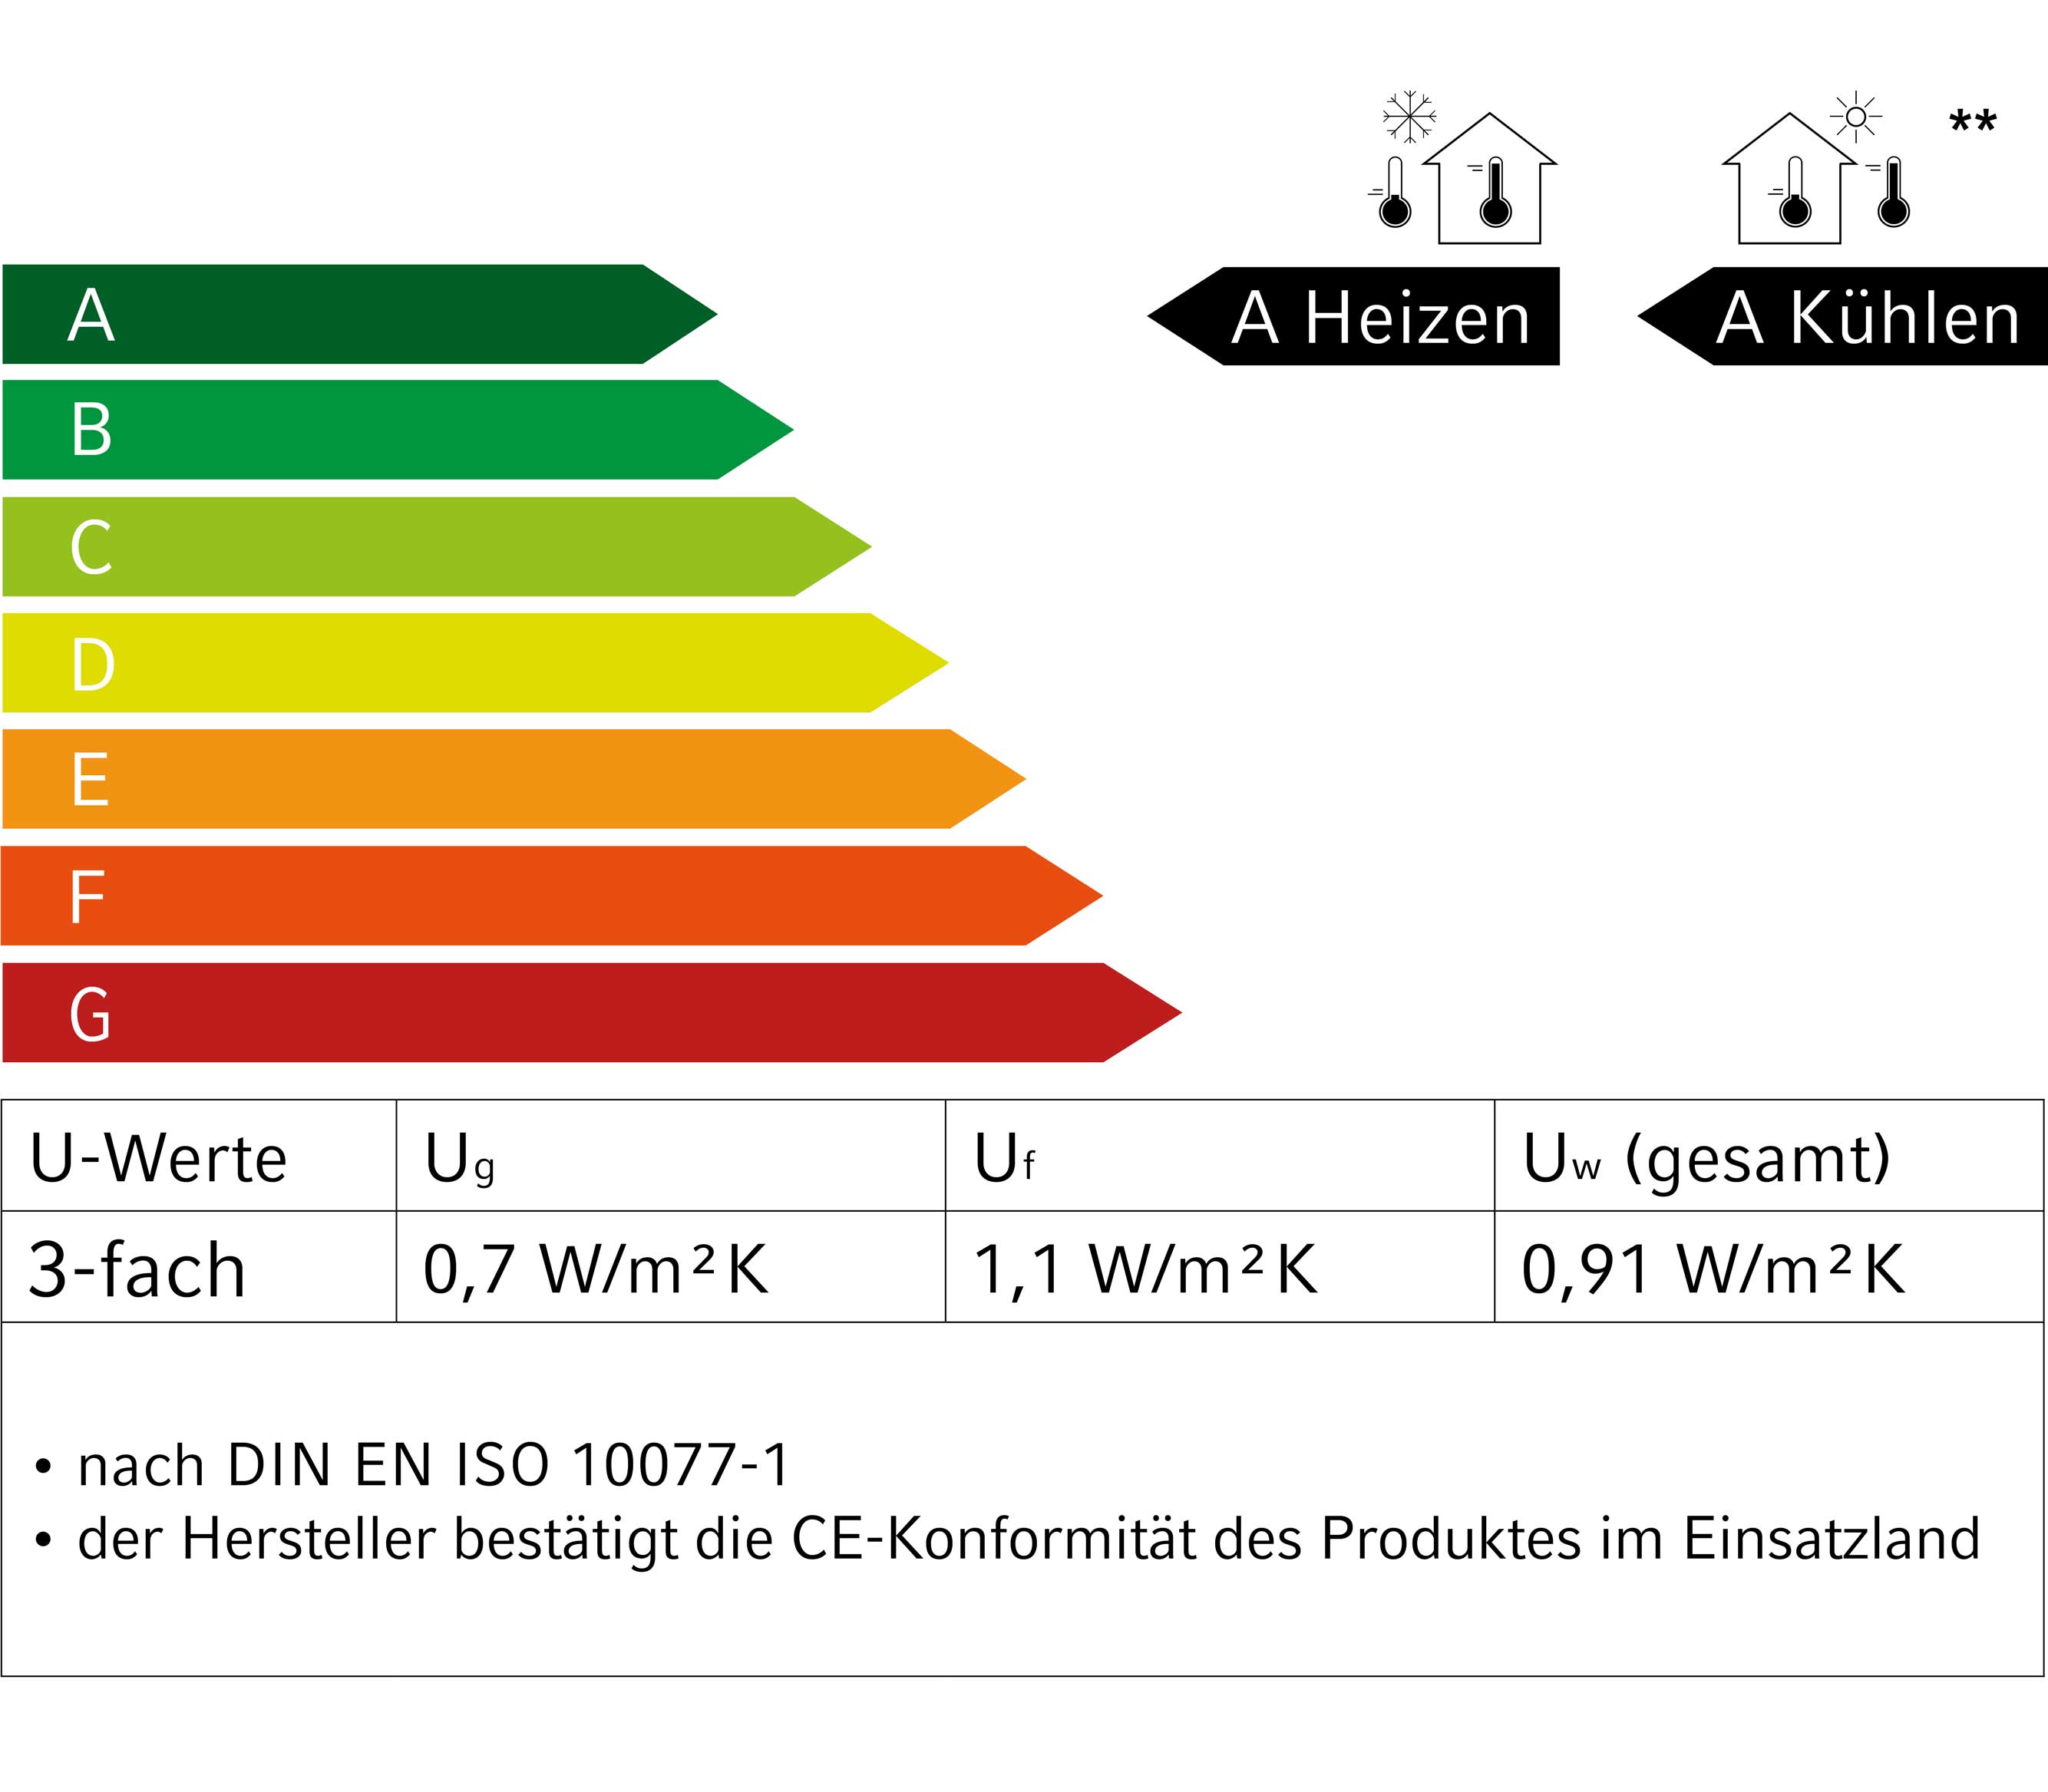 Energie Label eco 5000 MD Ratio